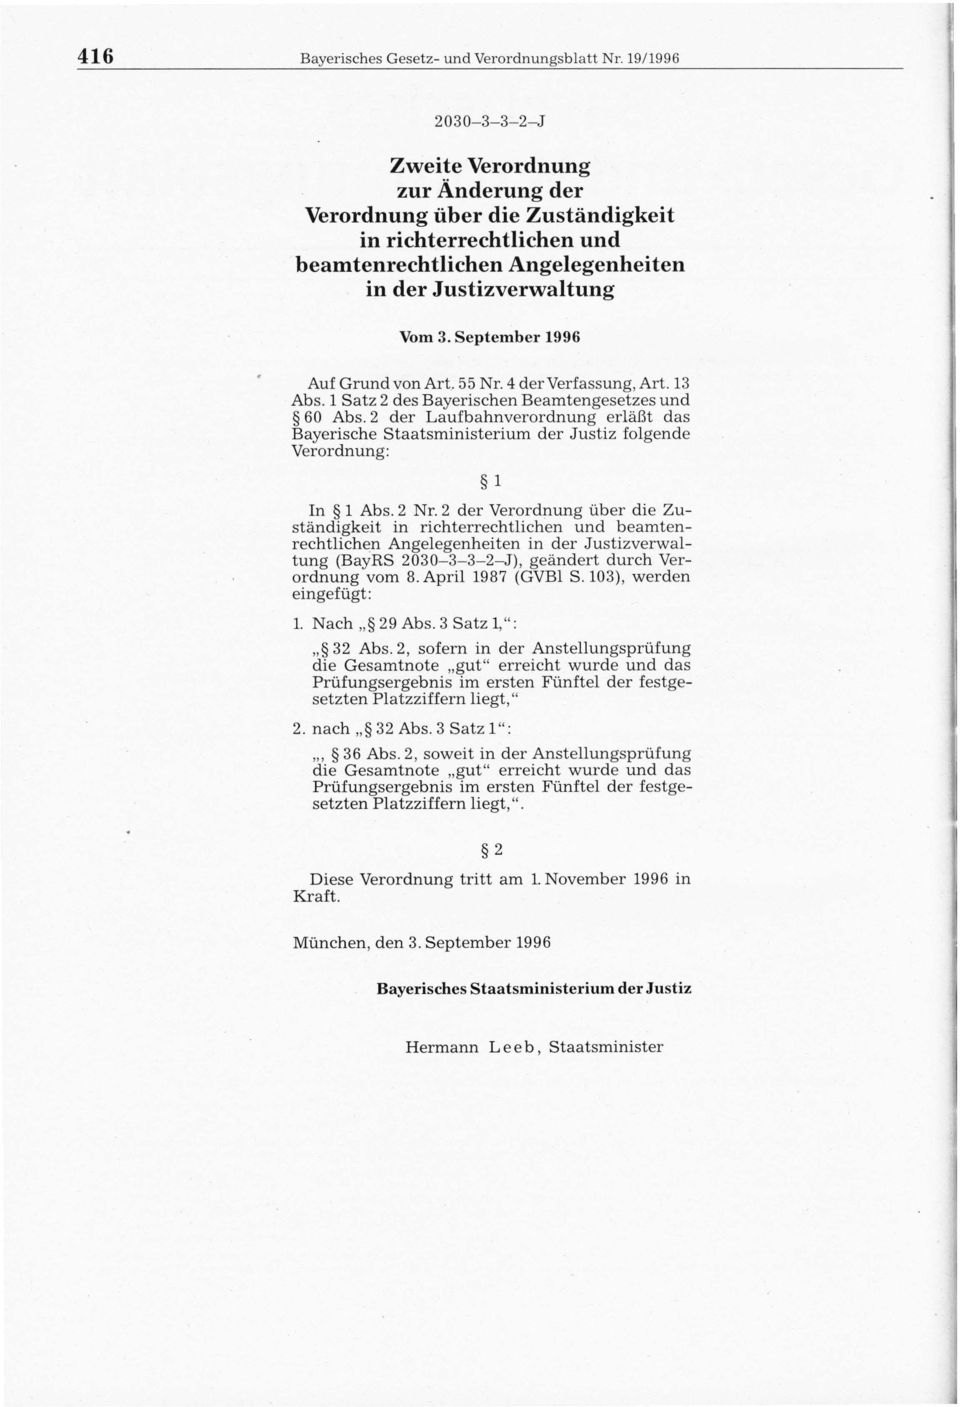 September 1996 Auf Grund von Art. 55 Nr. 4 der Verfassung, Art. 13 Abs. 1 Satz 2 des Bayerischen Beamtengesetzes und 60 Abs.